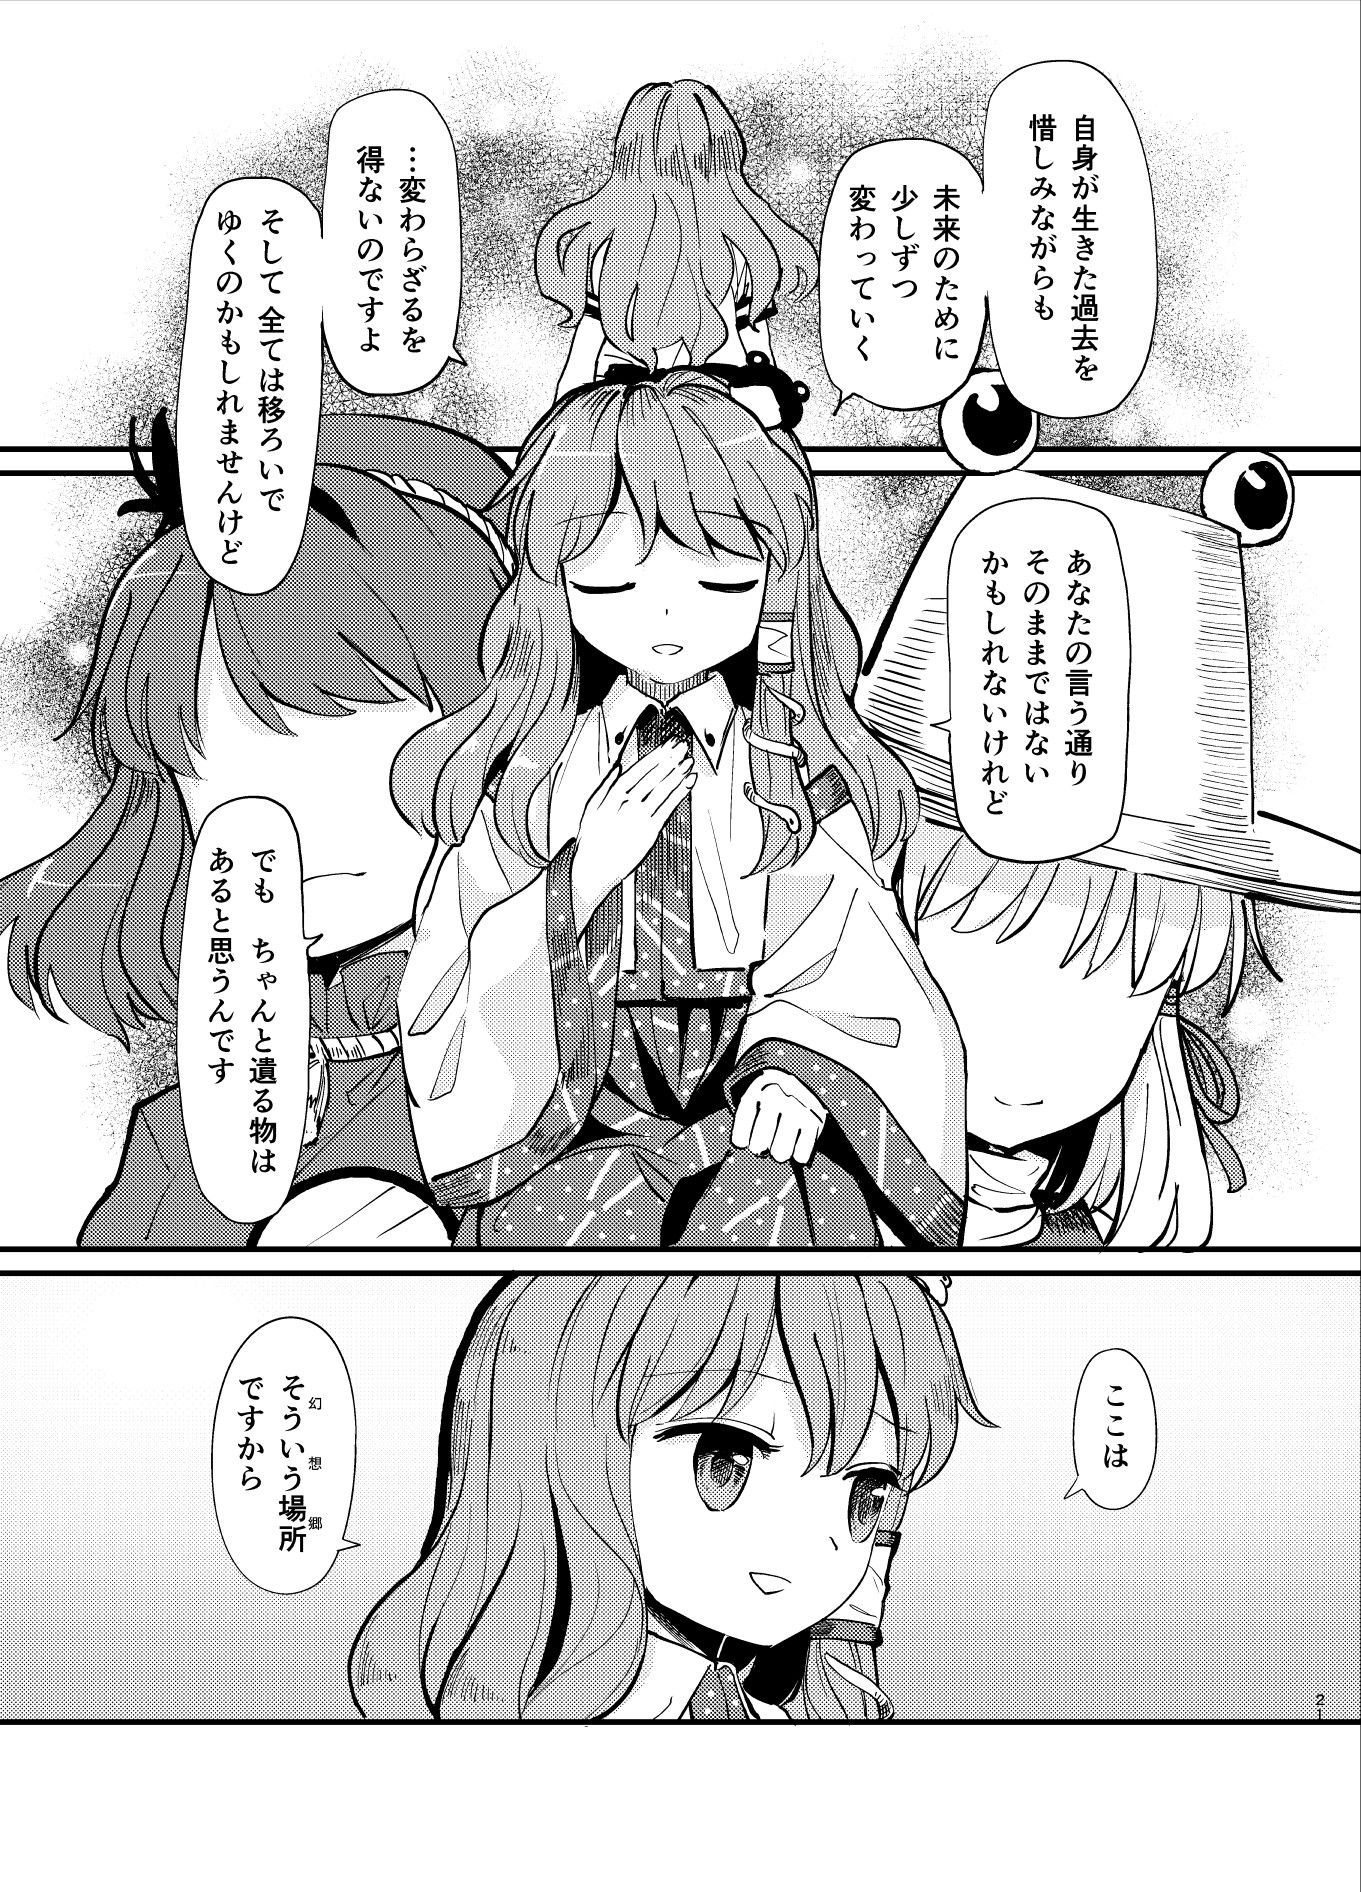 kochiya sanae, moriya suwako, and yasaka kanako (touhou) drawn by suna ...